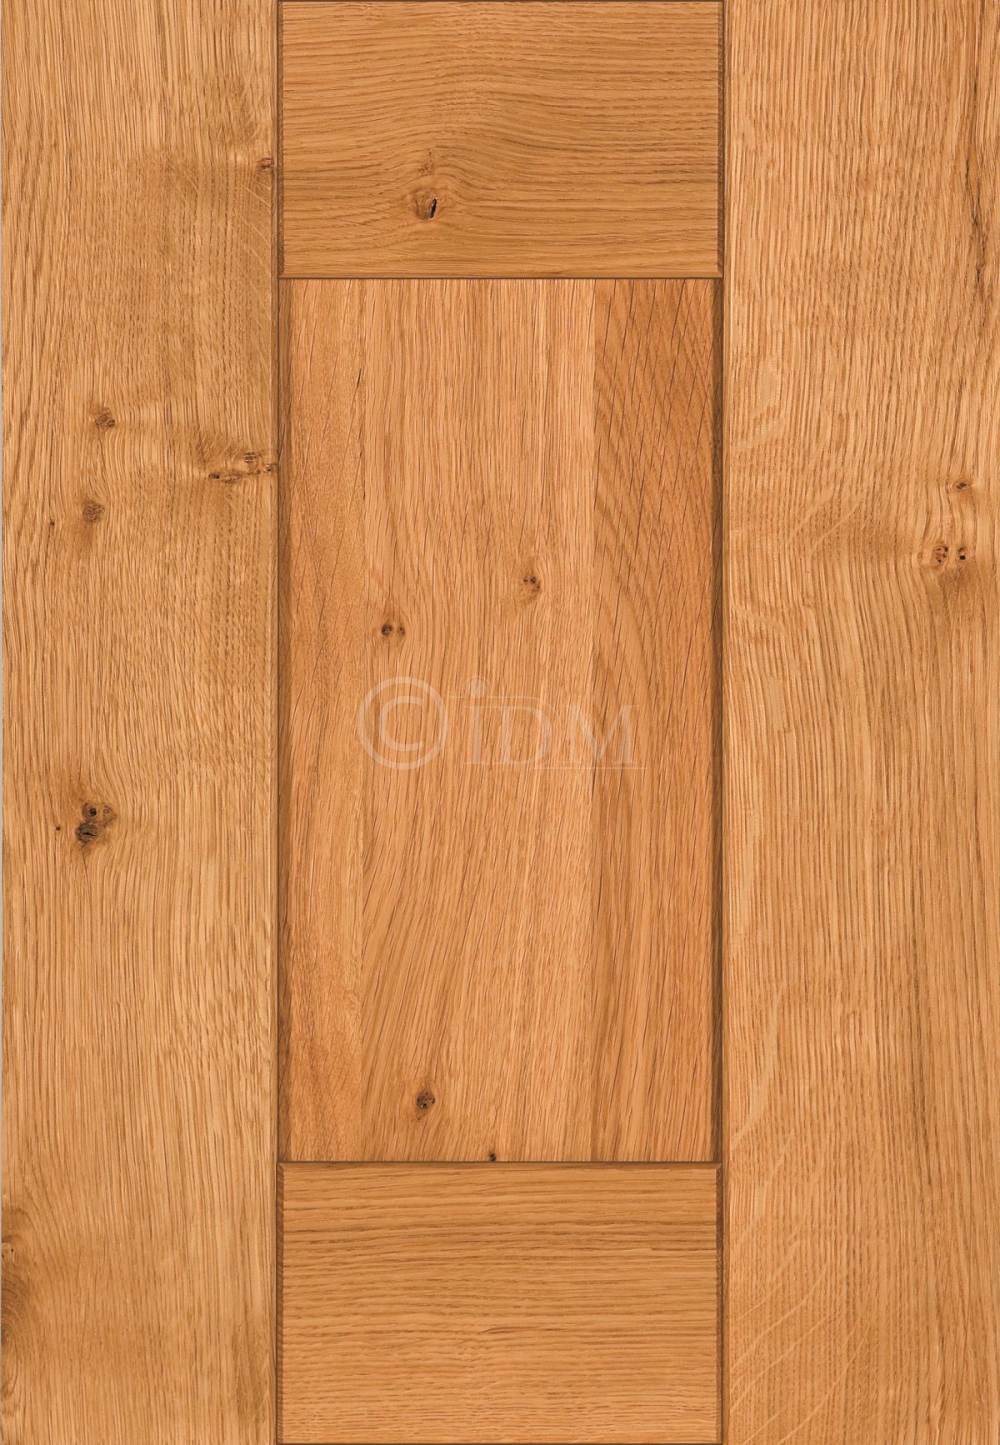 Irelands Largest Range Of 100 Solid Wood Cabinet Doors Solid